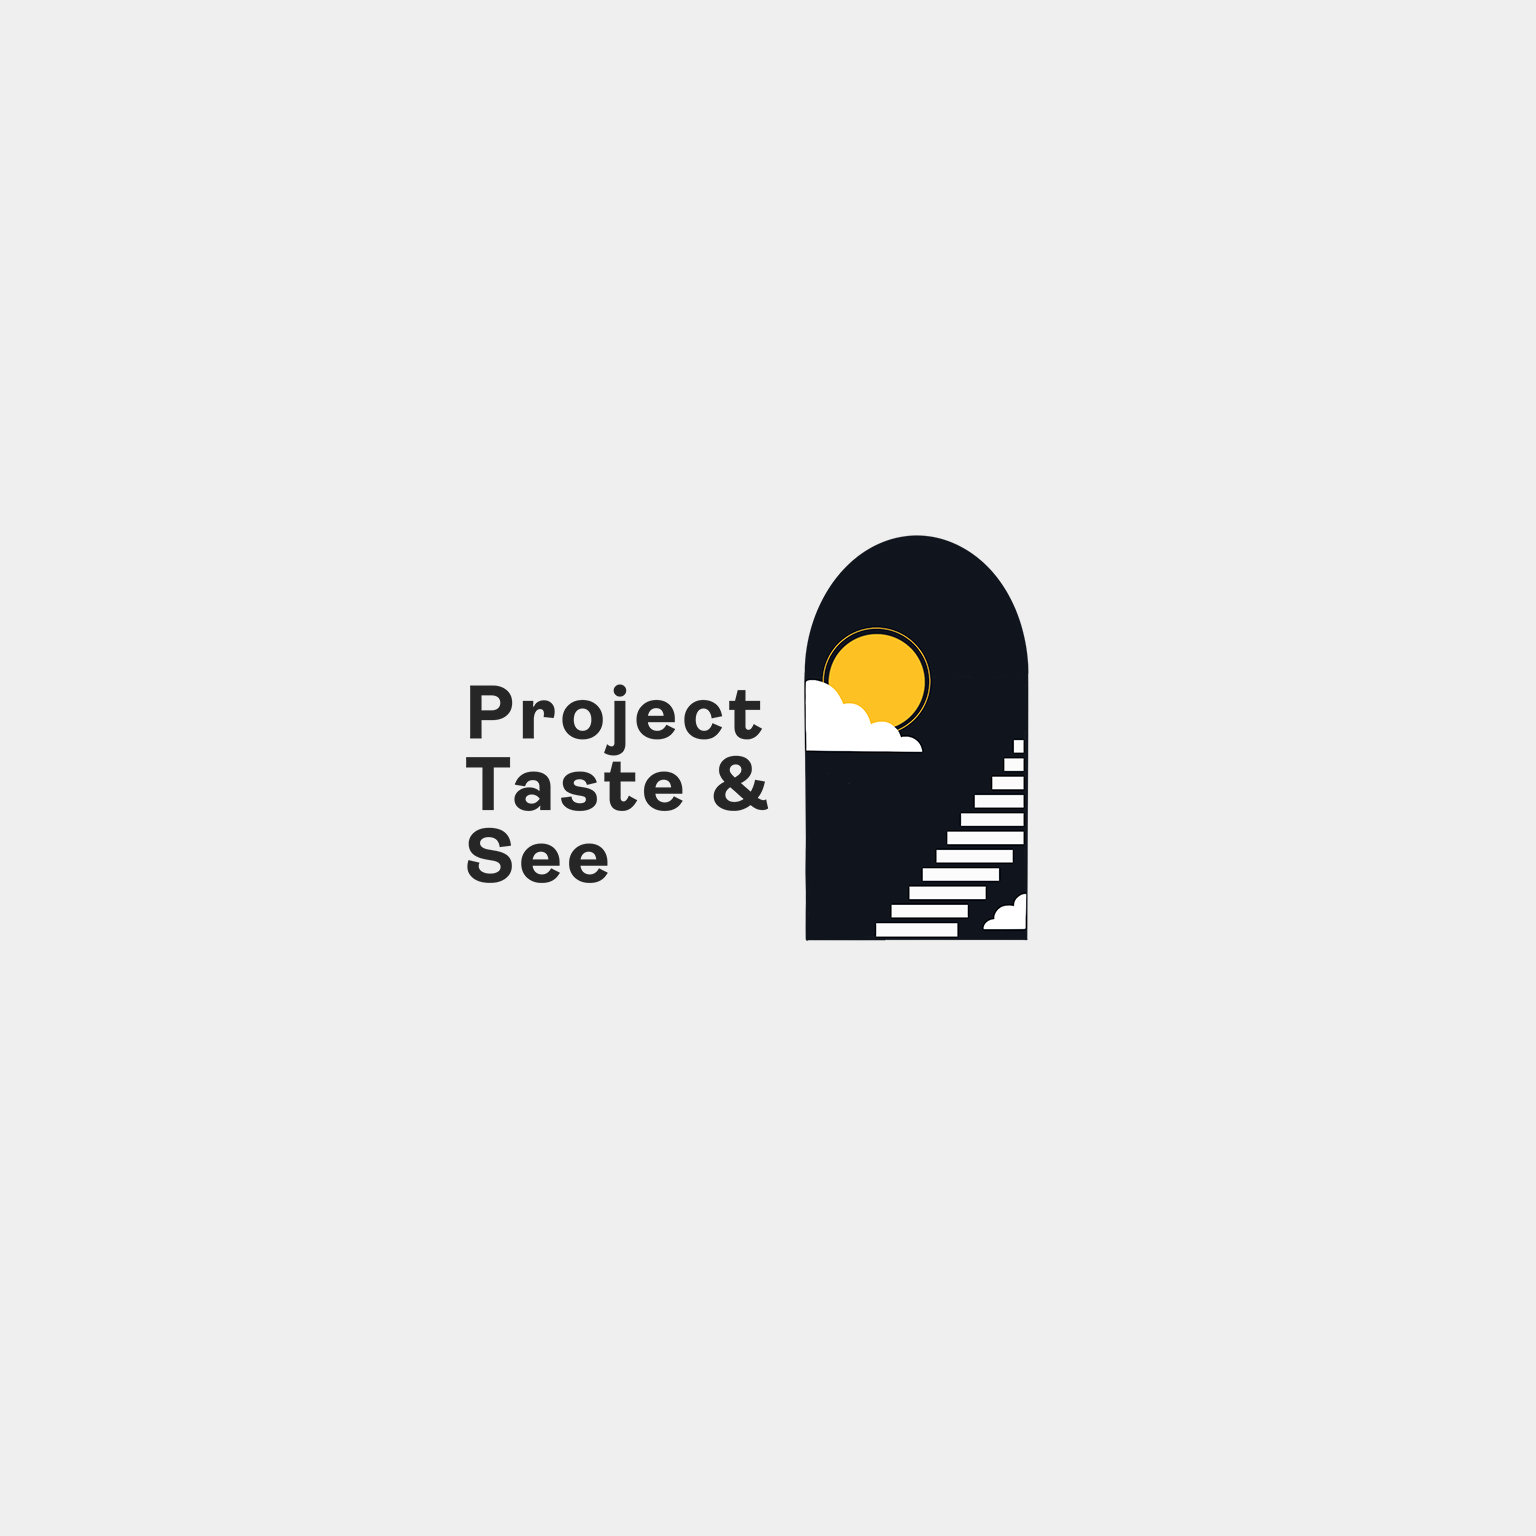 Project Taste & See